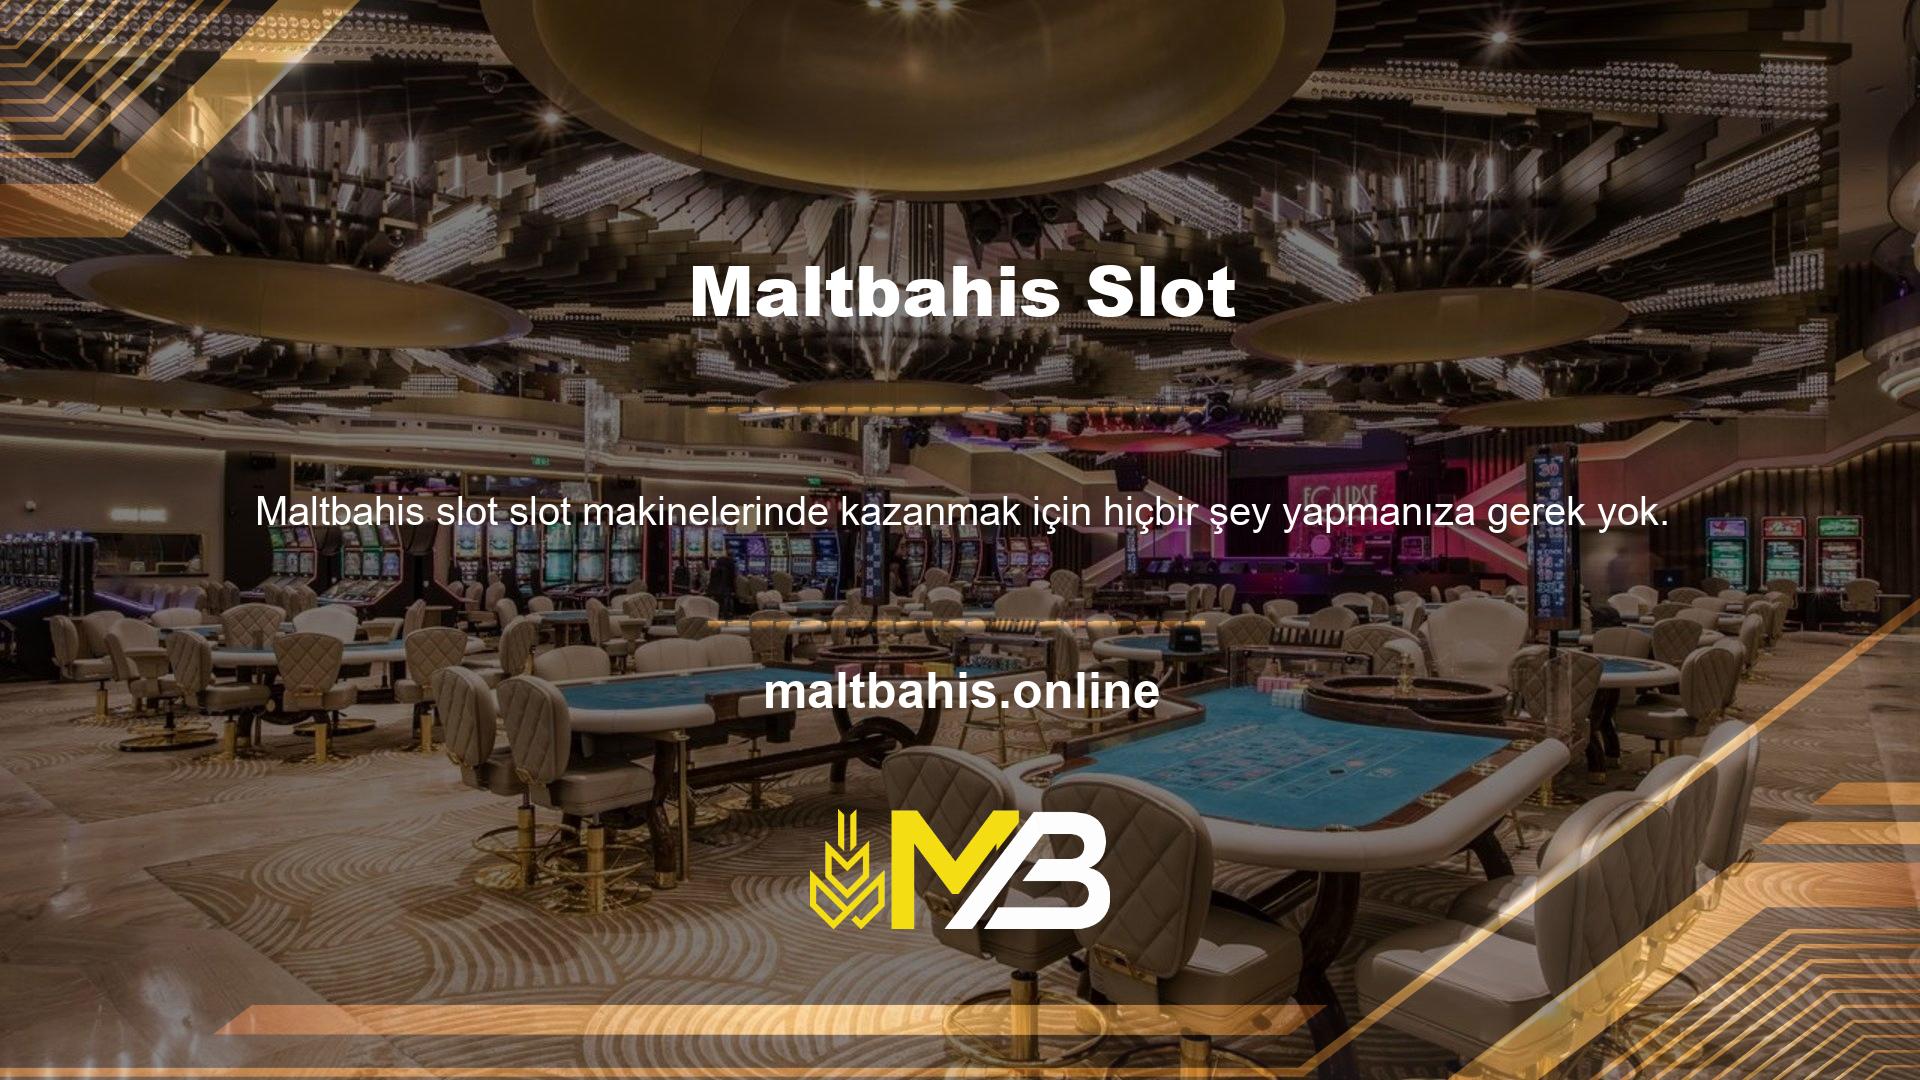 Maltbahis Games zararsız bir casino sitesidir